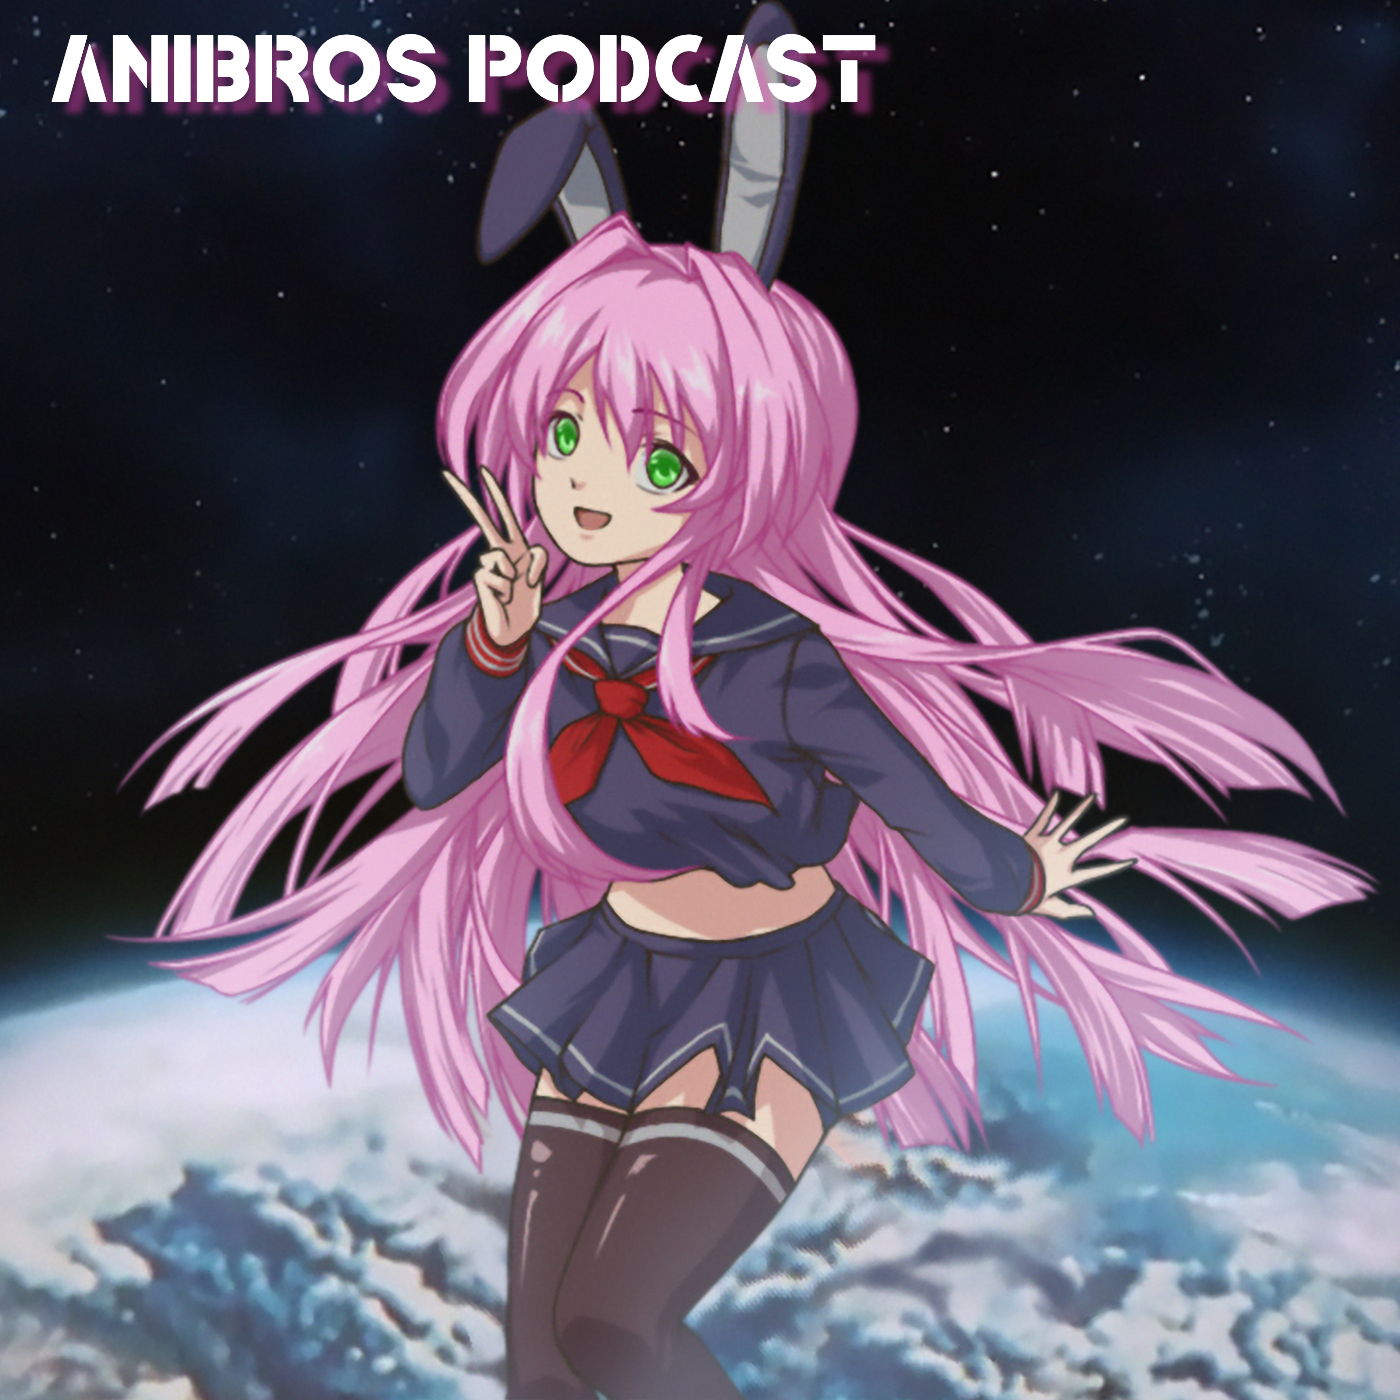 Anibros: An Anime Podcast